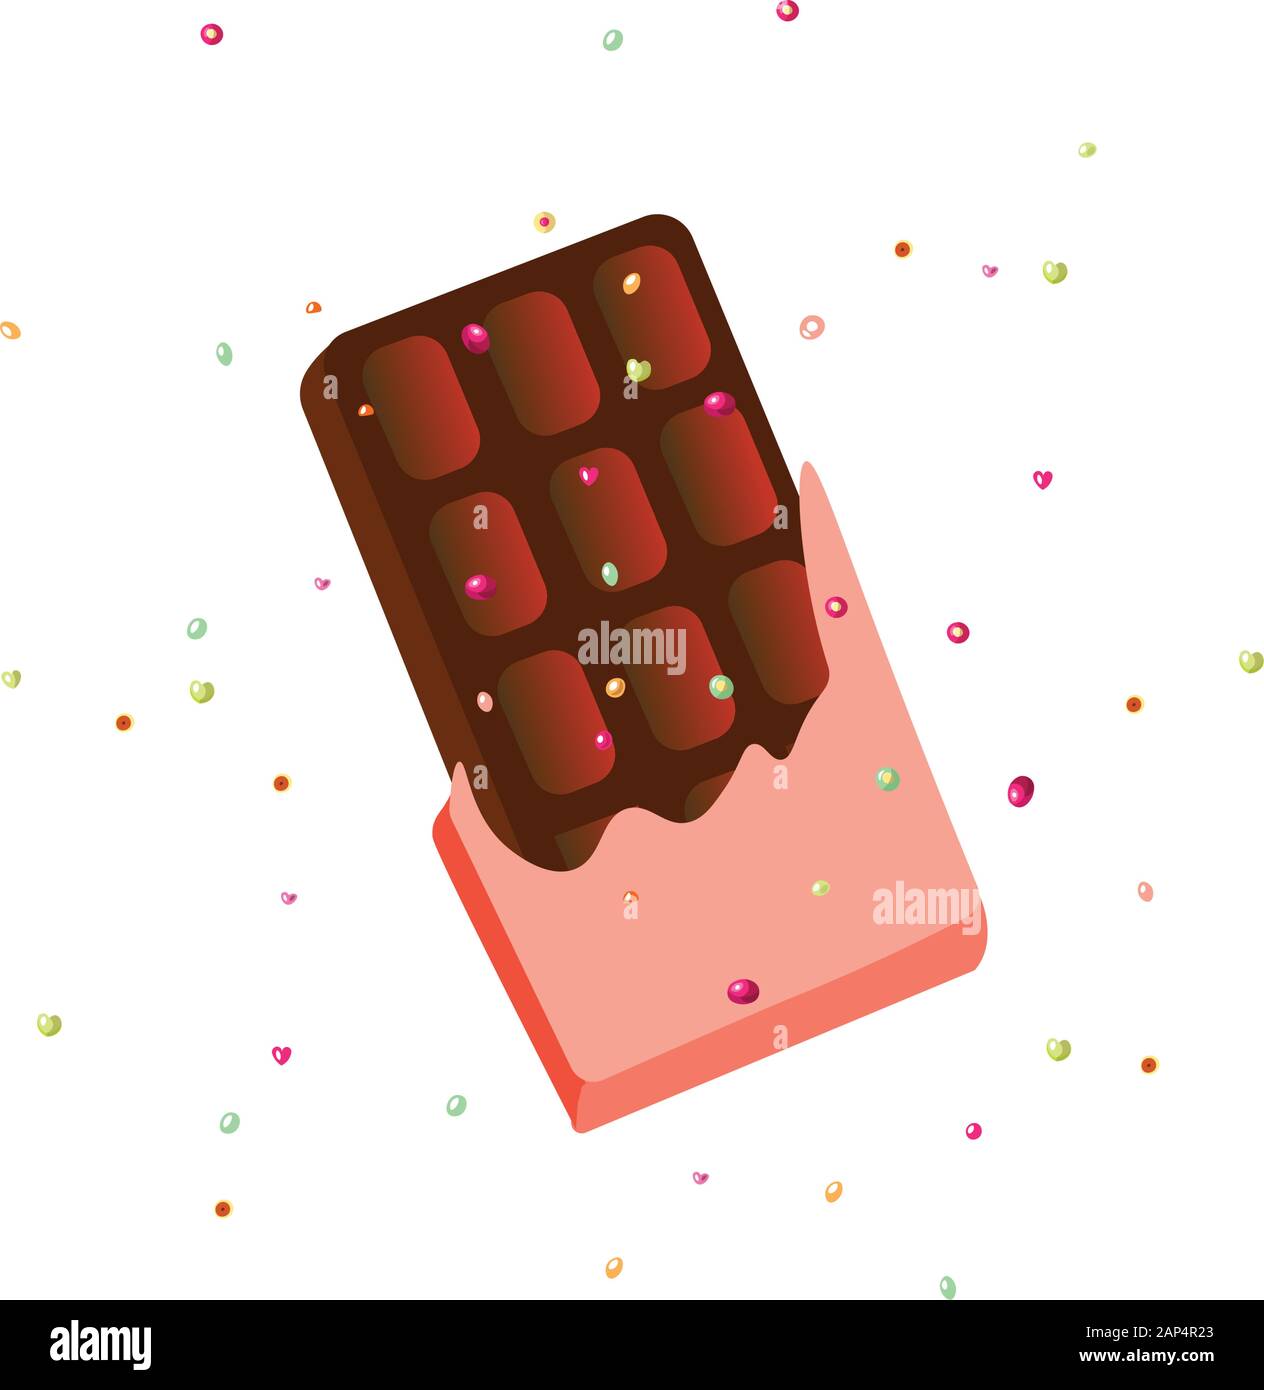 Dulce Chocolate Marrón Oscuro Icono De Vector De Dibujos Animados En La